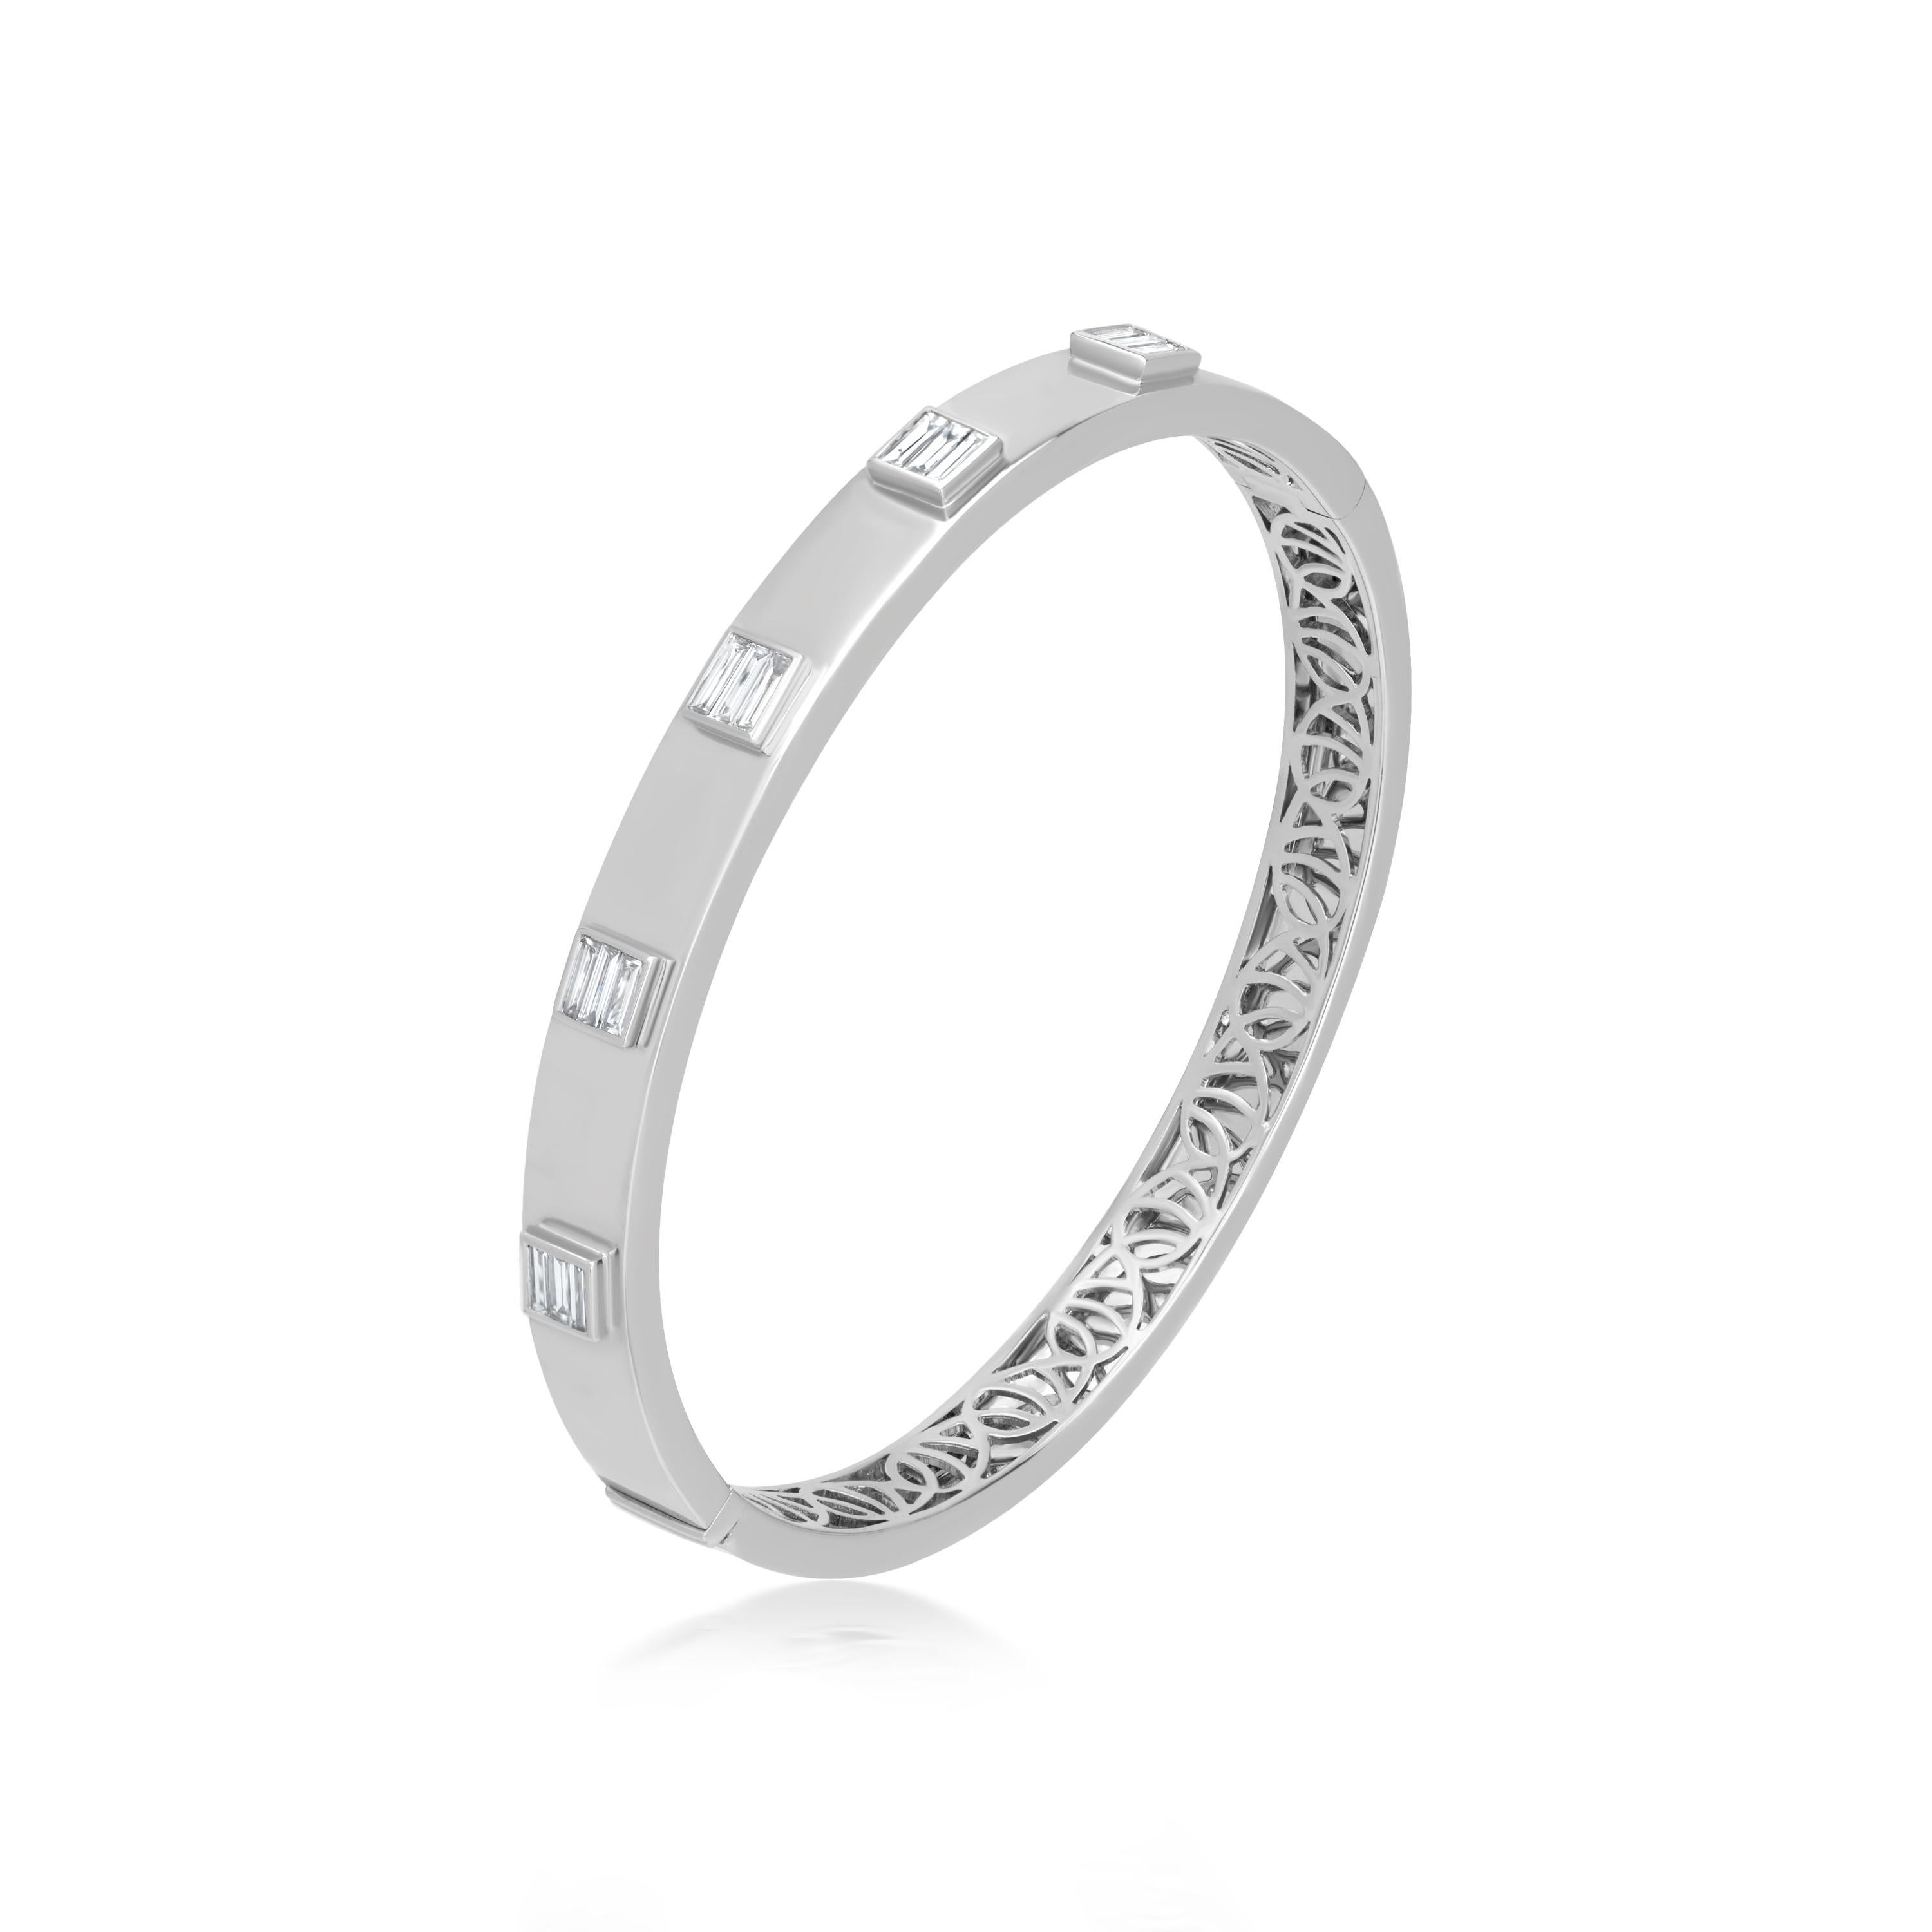 Ornez vous de ce spectaculaire bracelet bangle 0,66 ct. t.w. de diamants baguettes pleine taille sertis sur lunette alternent sur de l'or blanc 18k poli. Le dos intérieur du bracelet est accentué par un treillis curviligne. Dimension intérieure : 50